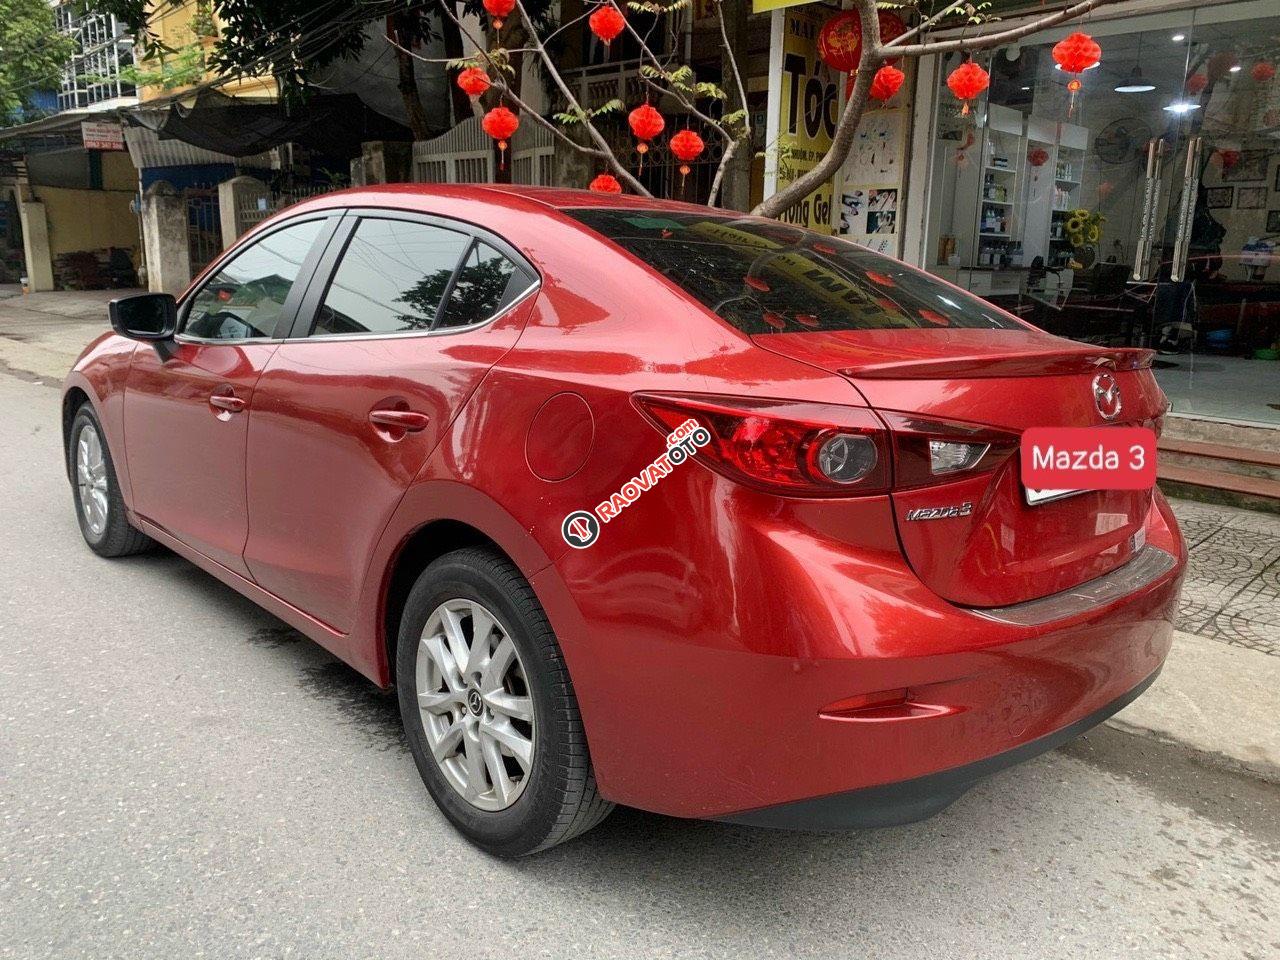 Cần bán lại xe Mazda 3 1.5 AT sản xuất năm 2017, màu đỏ, xe động cơ hộp số nguyên zin nhà sản xuất-19